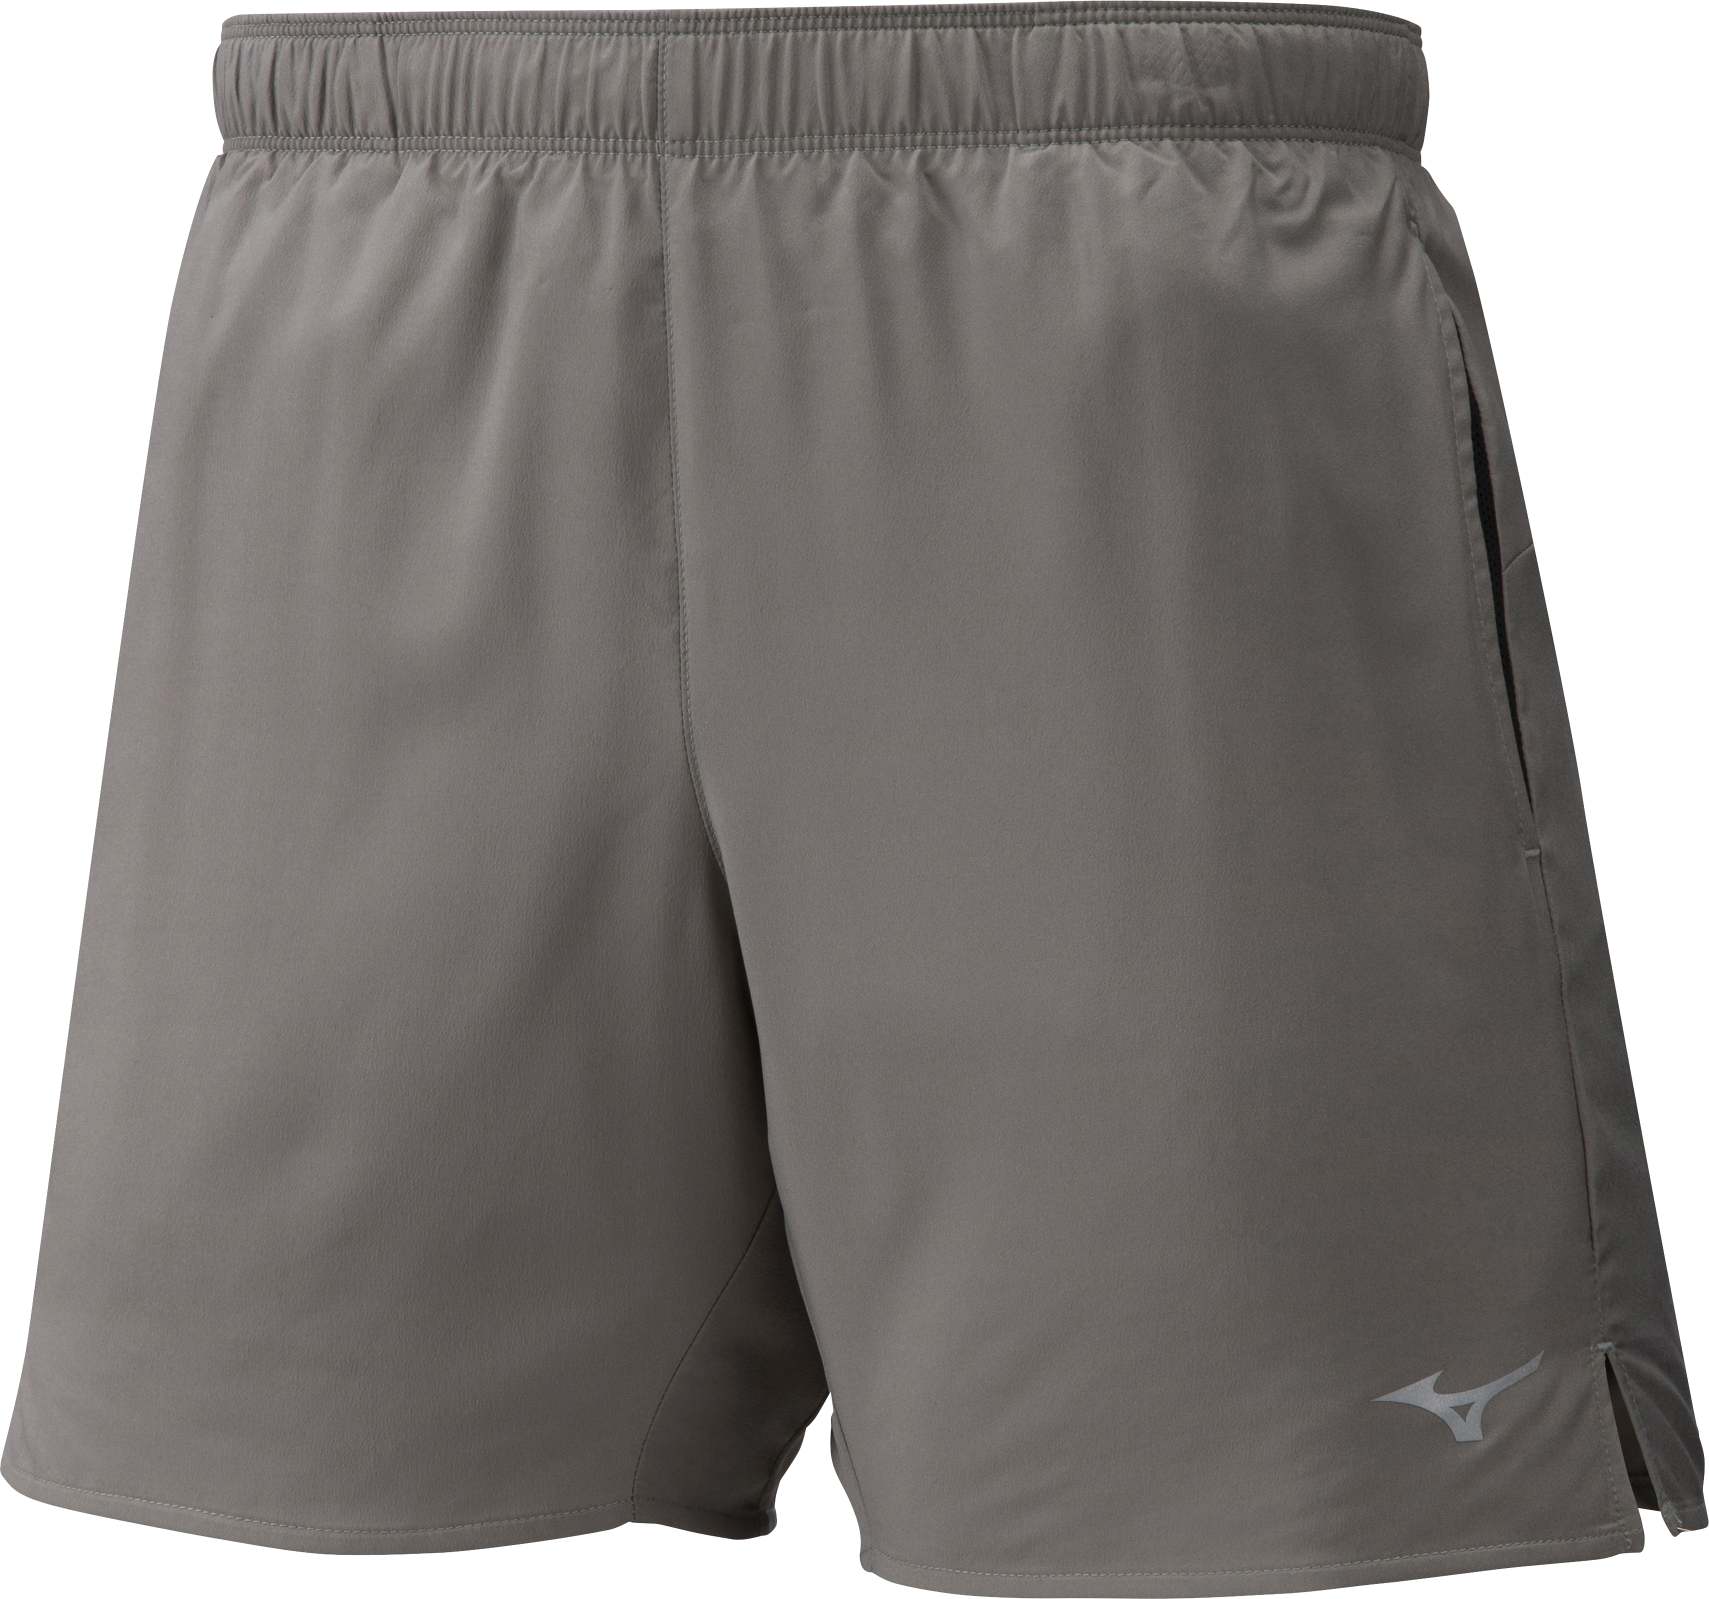 Men’s multisport shorts